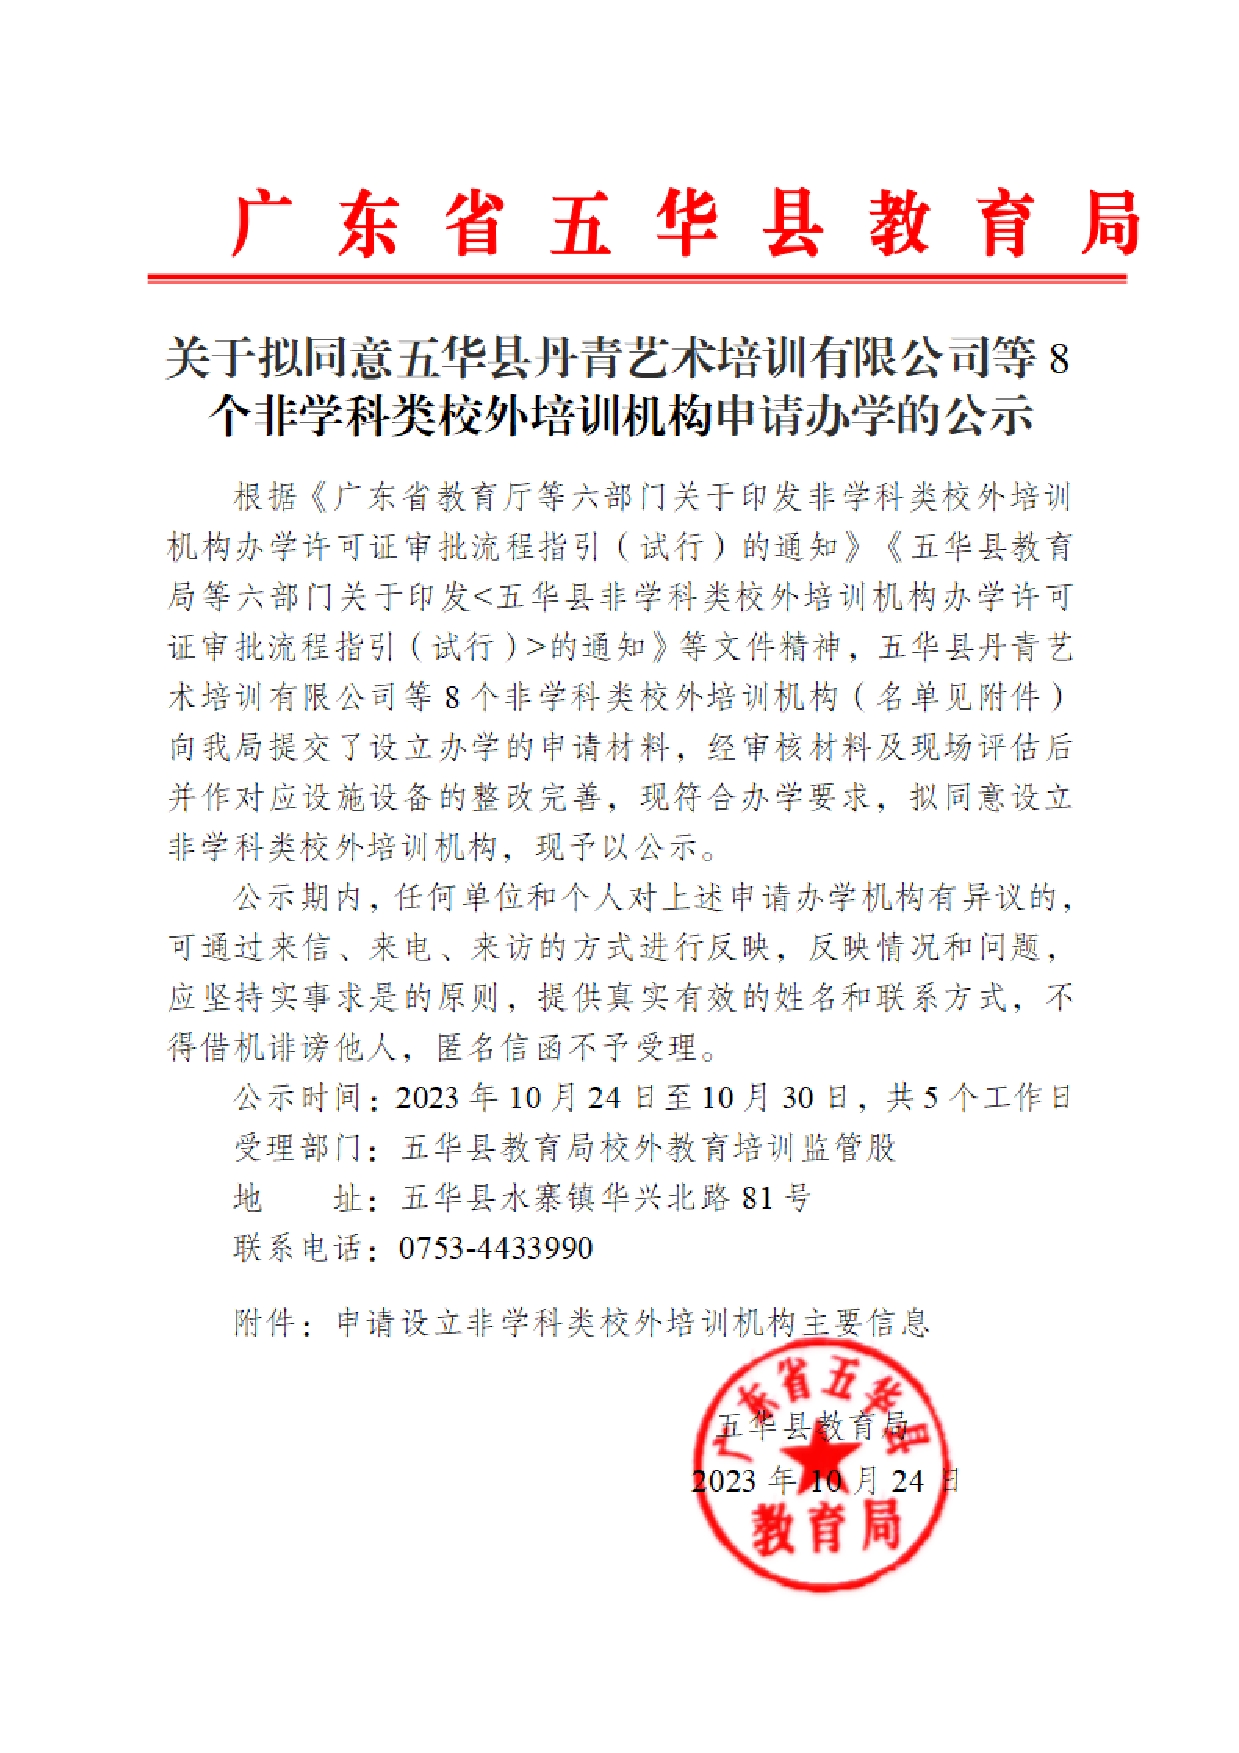 关于拟同意五华县丹青艺术培训有限公司等8个校外培训机构申请办学的公示2023.10.240000.jpg